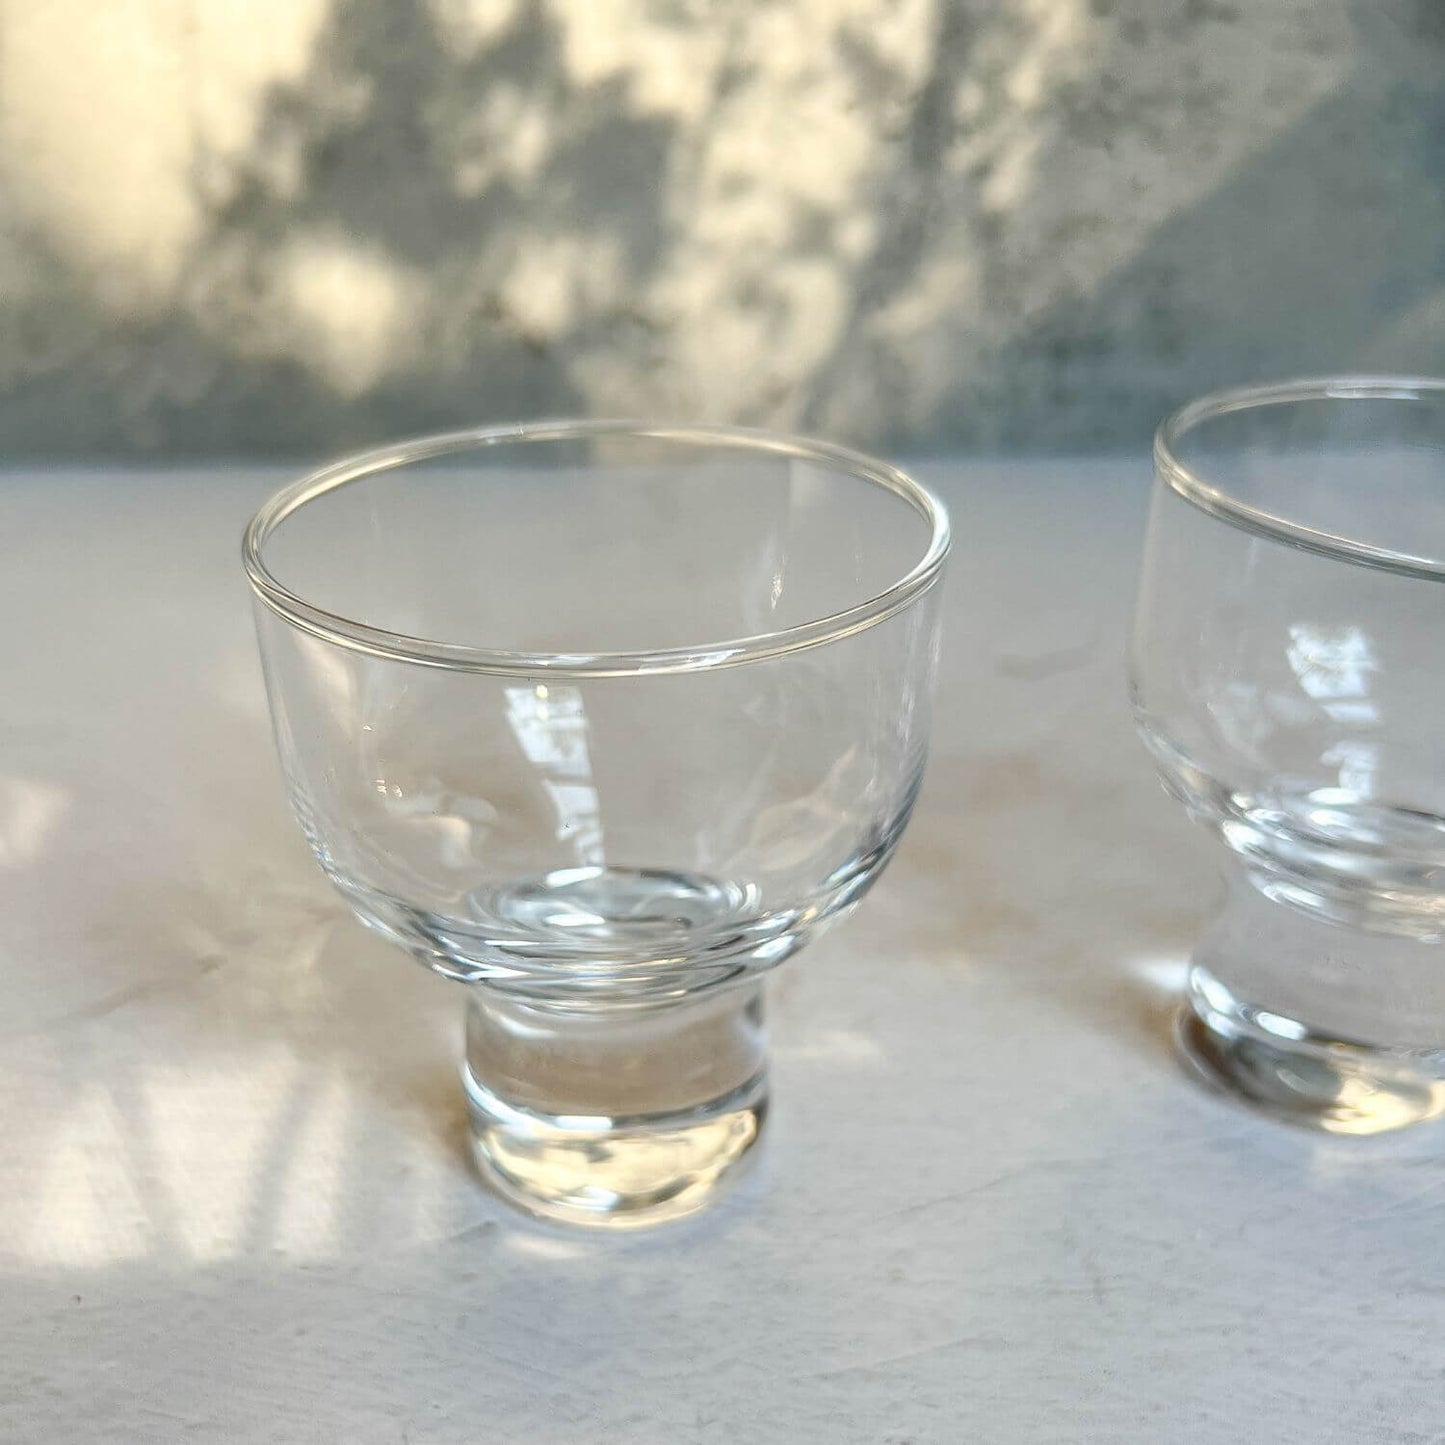 4.4 oz Sake Glass Cup by Sori Yanagi